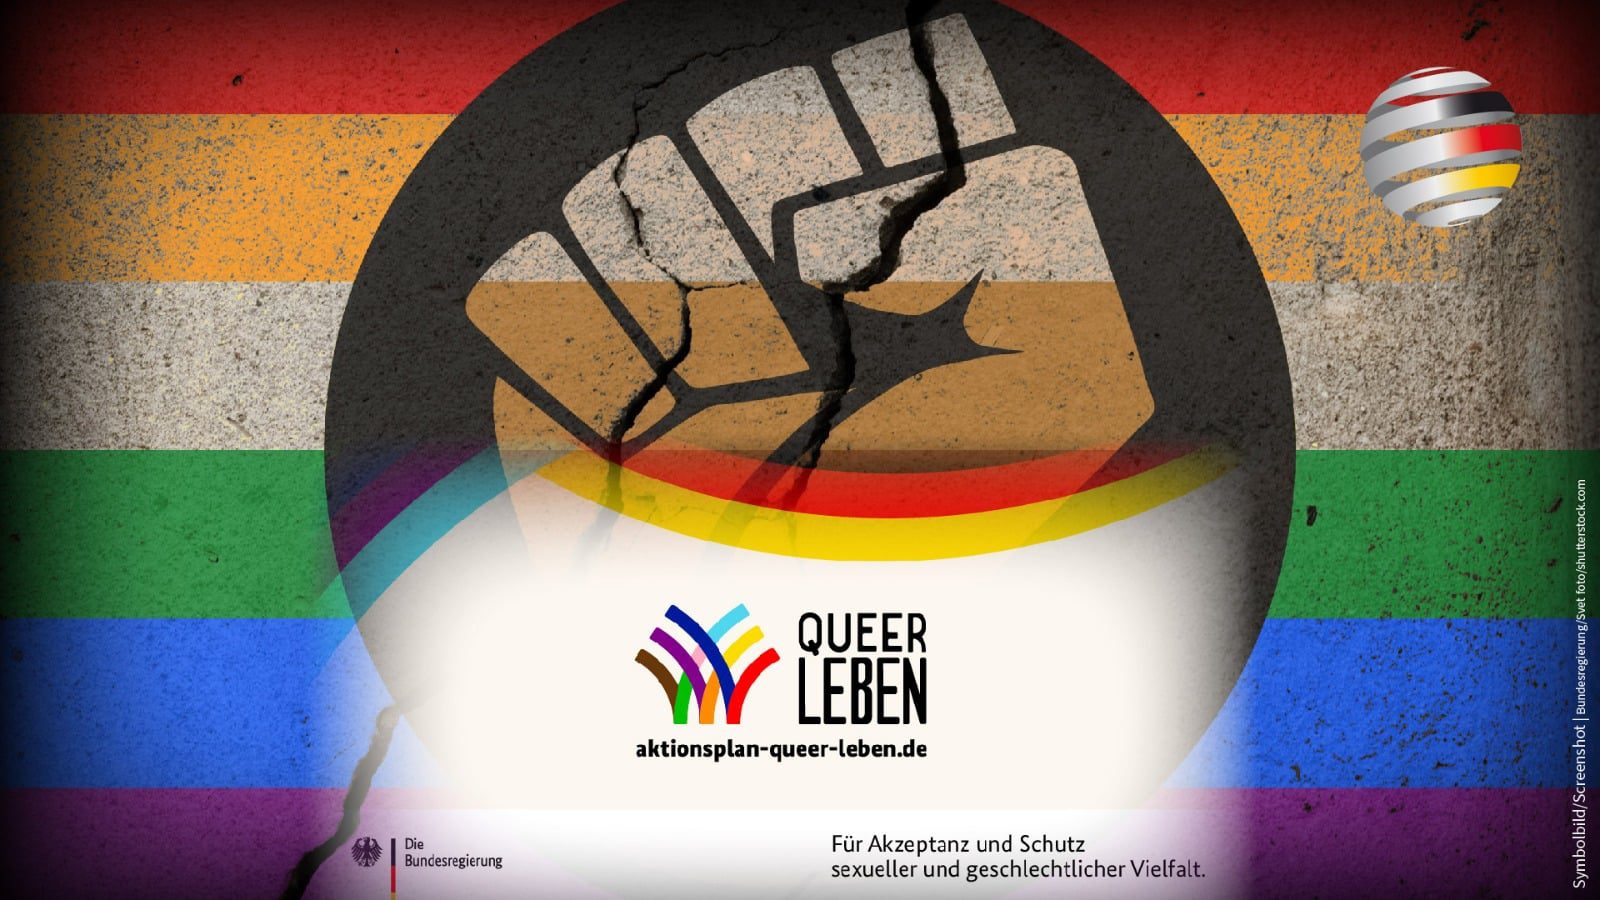 aktionsplan-„queer-leben“:-kritik-an-der-transgender-ideologie-soll-strafbar-werden!